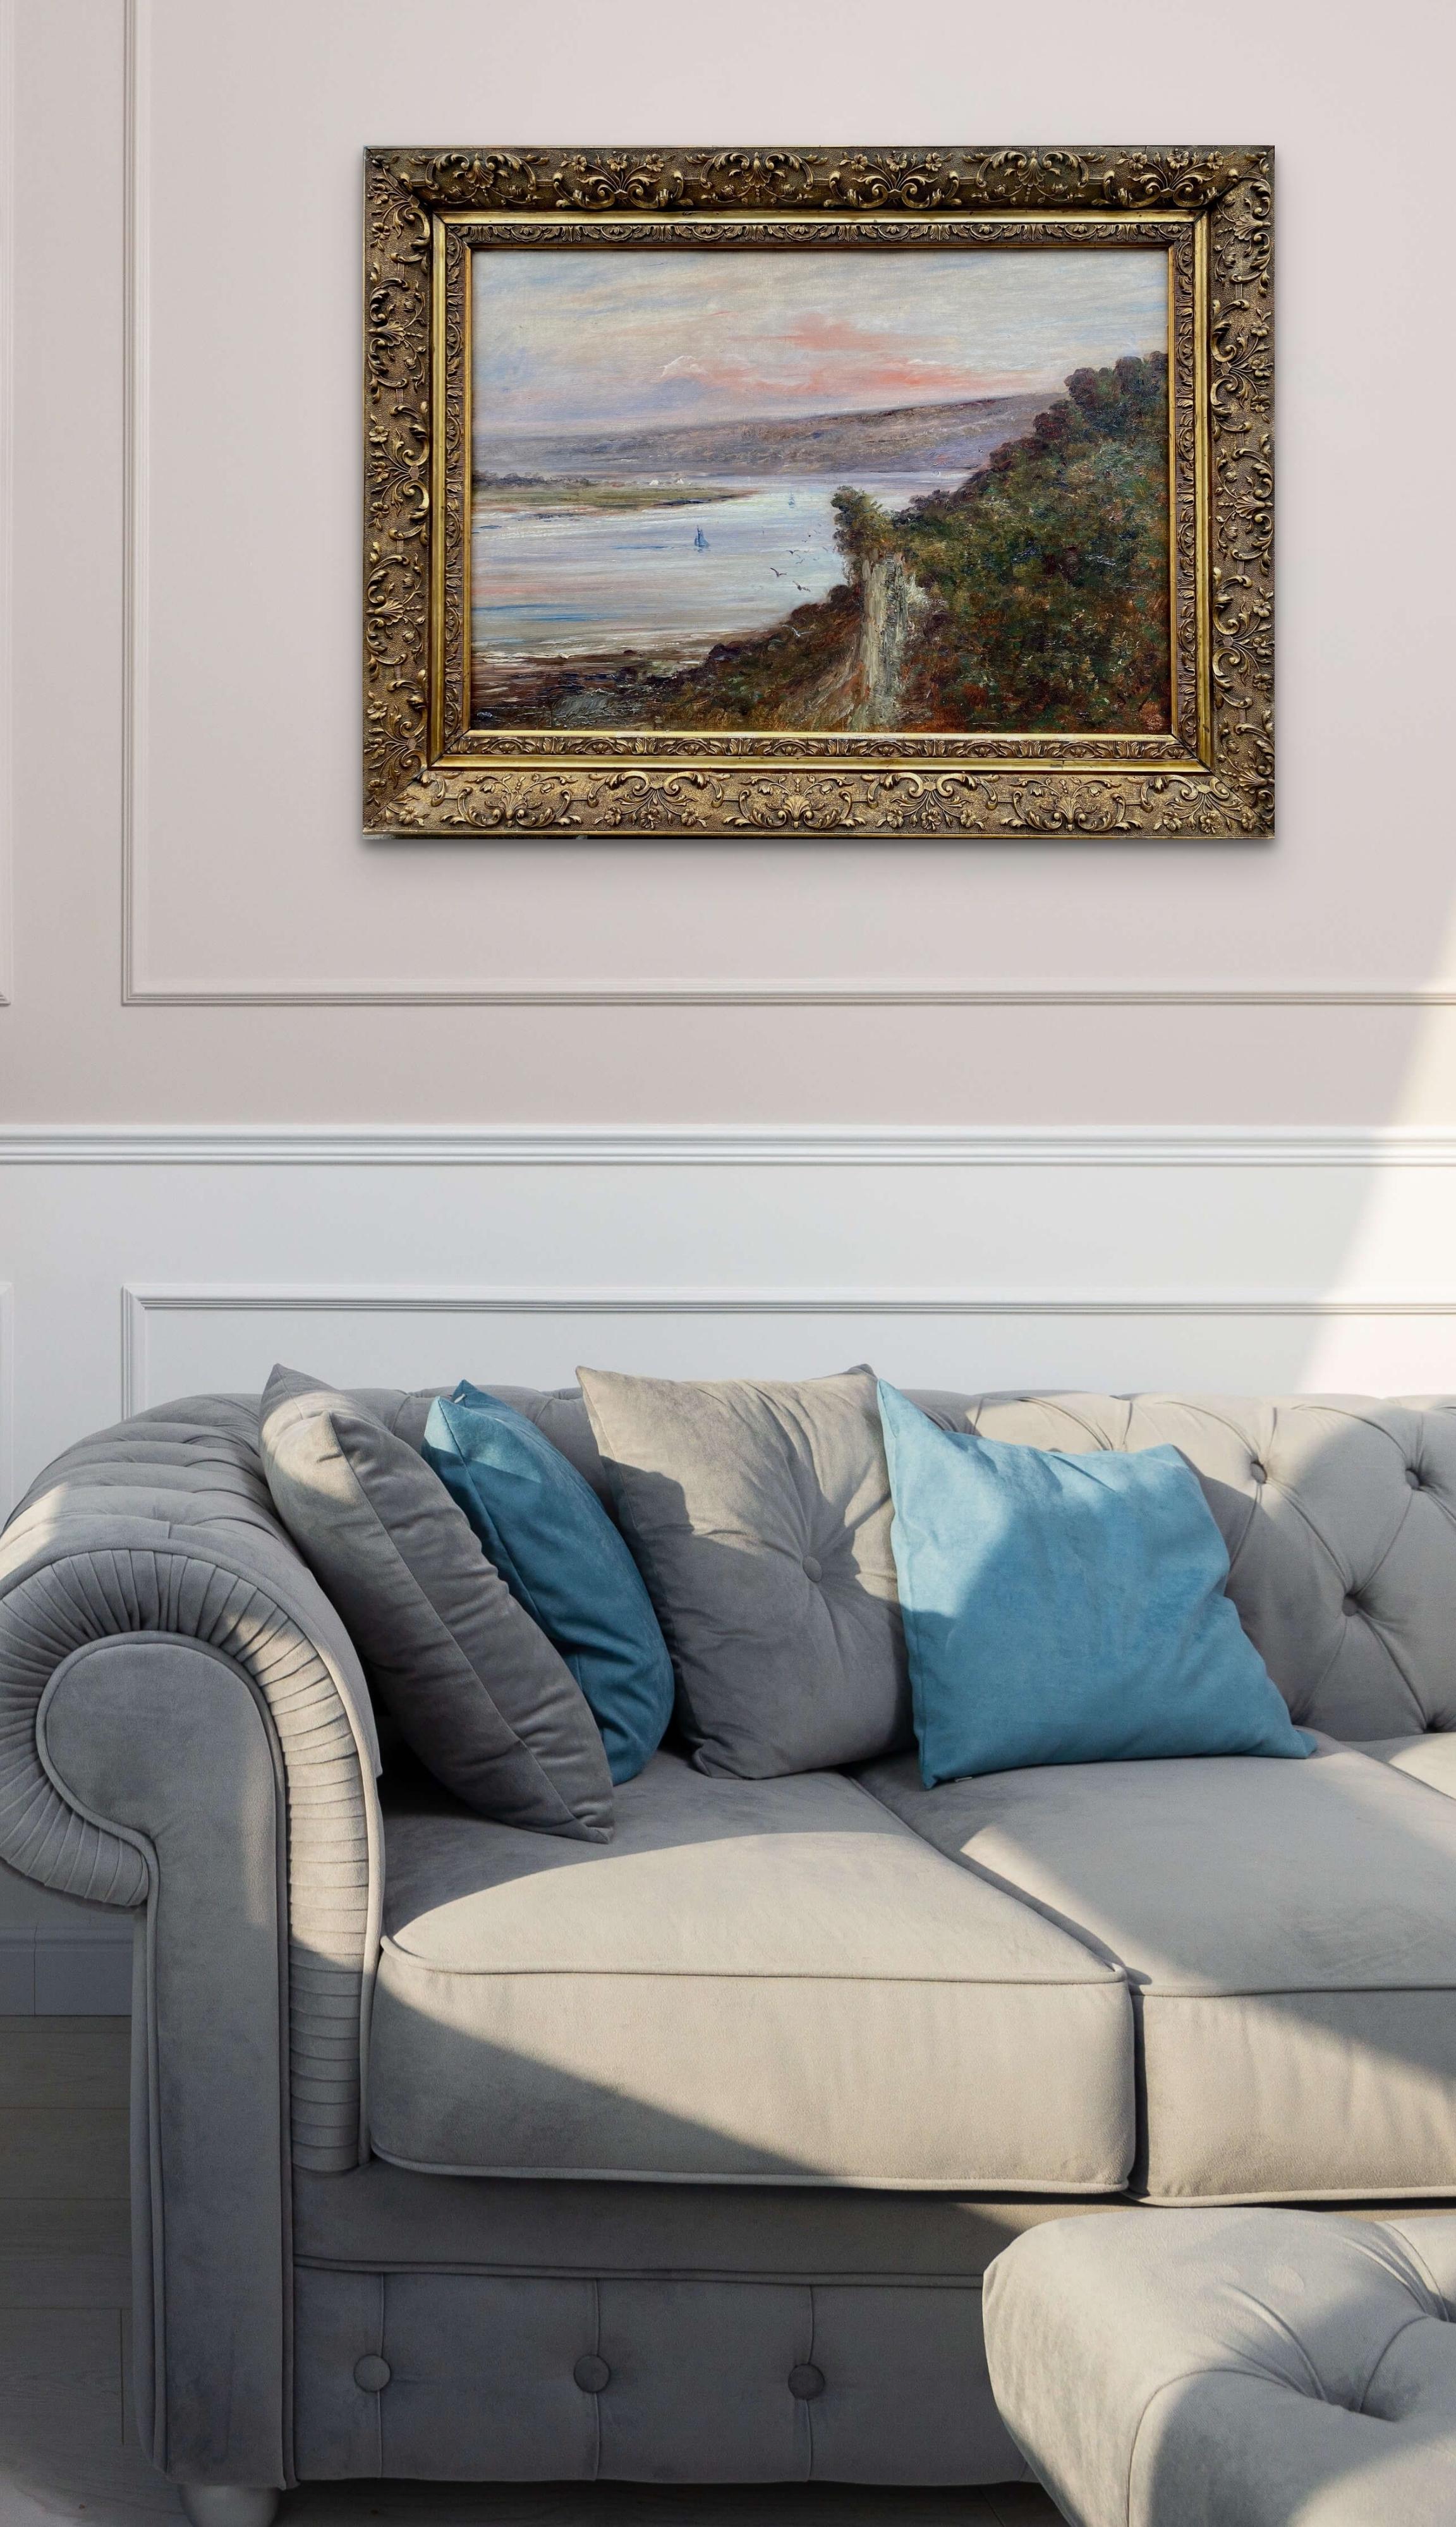 Seine bei Sonnenaufgang, rosa Wolken: Impressionistische blaue und grüne Flusslandschaft  (Impressionismus), Painting, von Louis Alexis Saraben